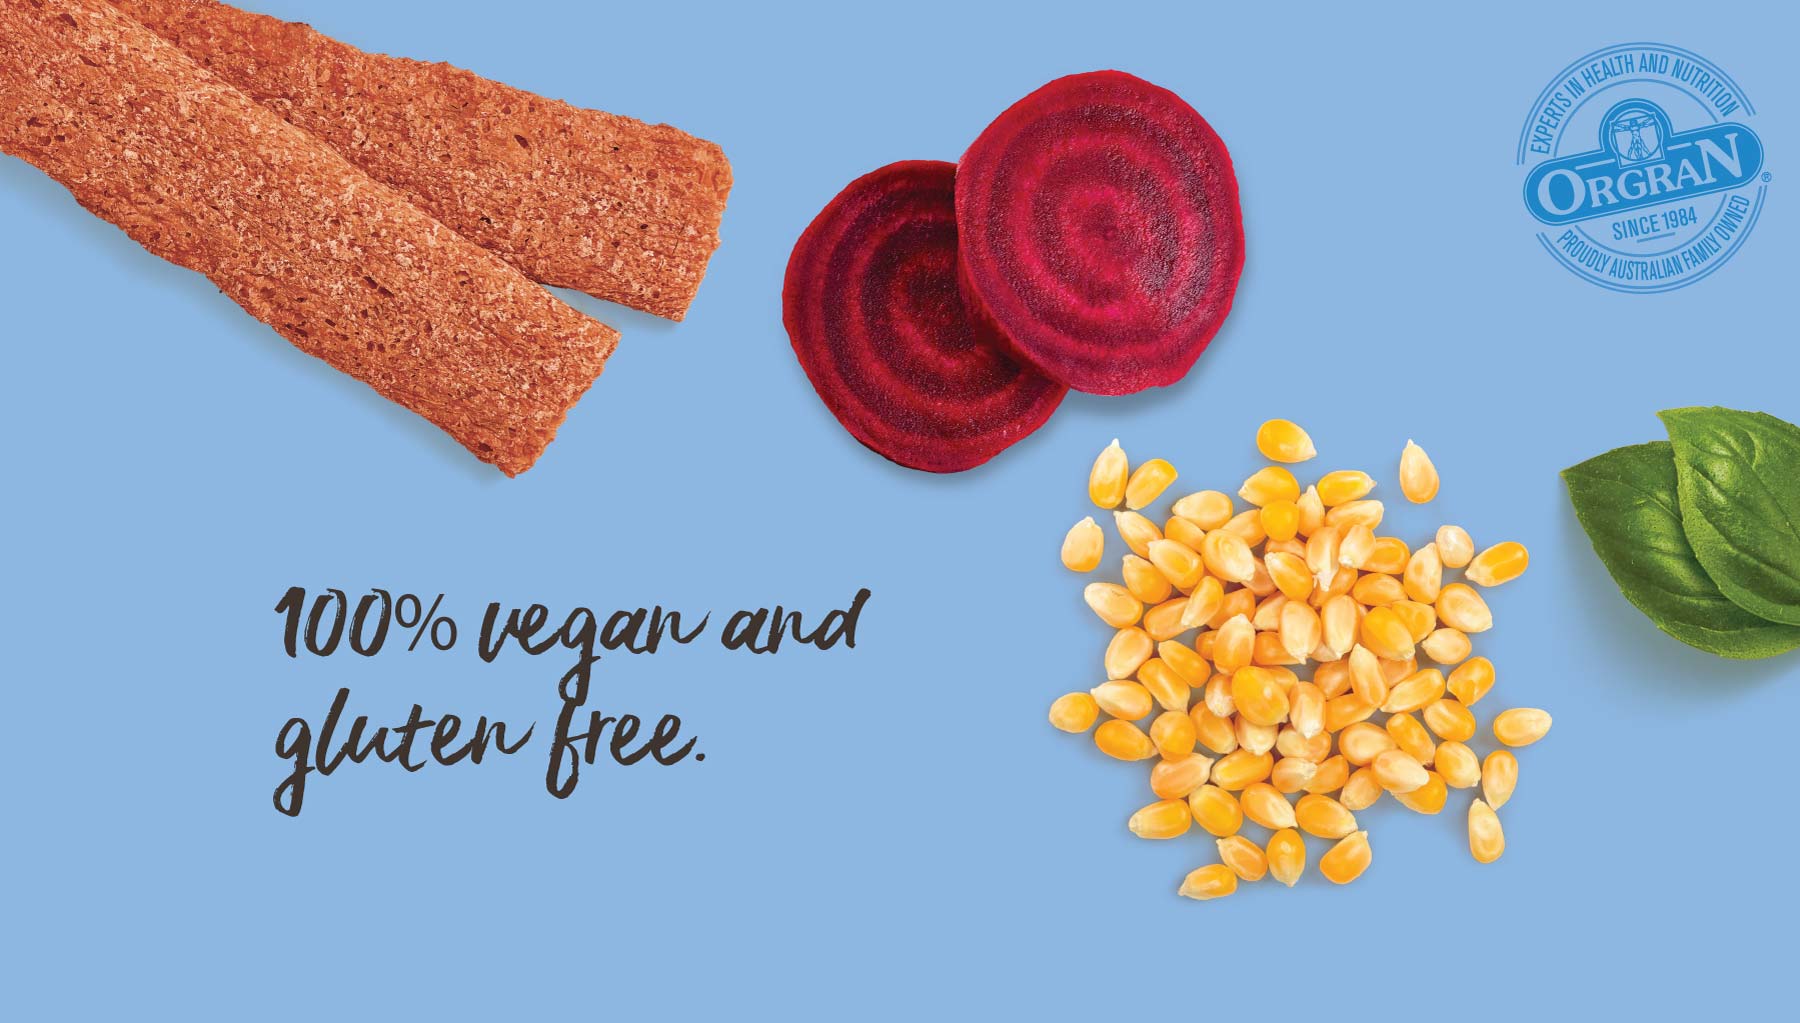 100% vegan and gluten free.